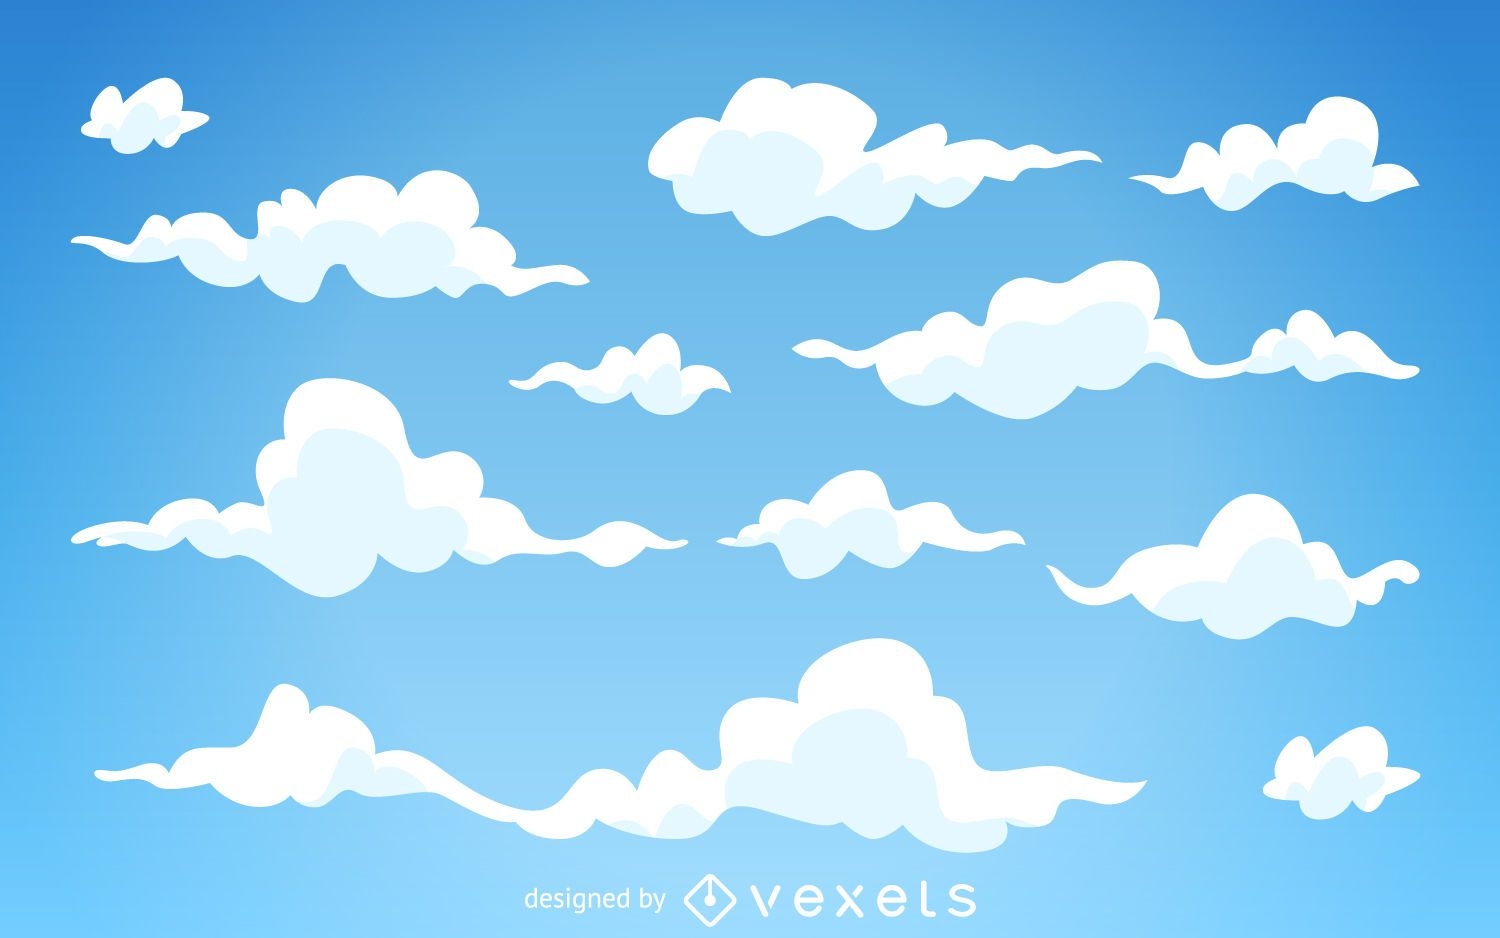 Descarga Vector De Fondo De Nubes De Dibujos Animados Ilustrados